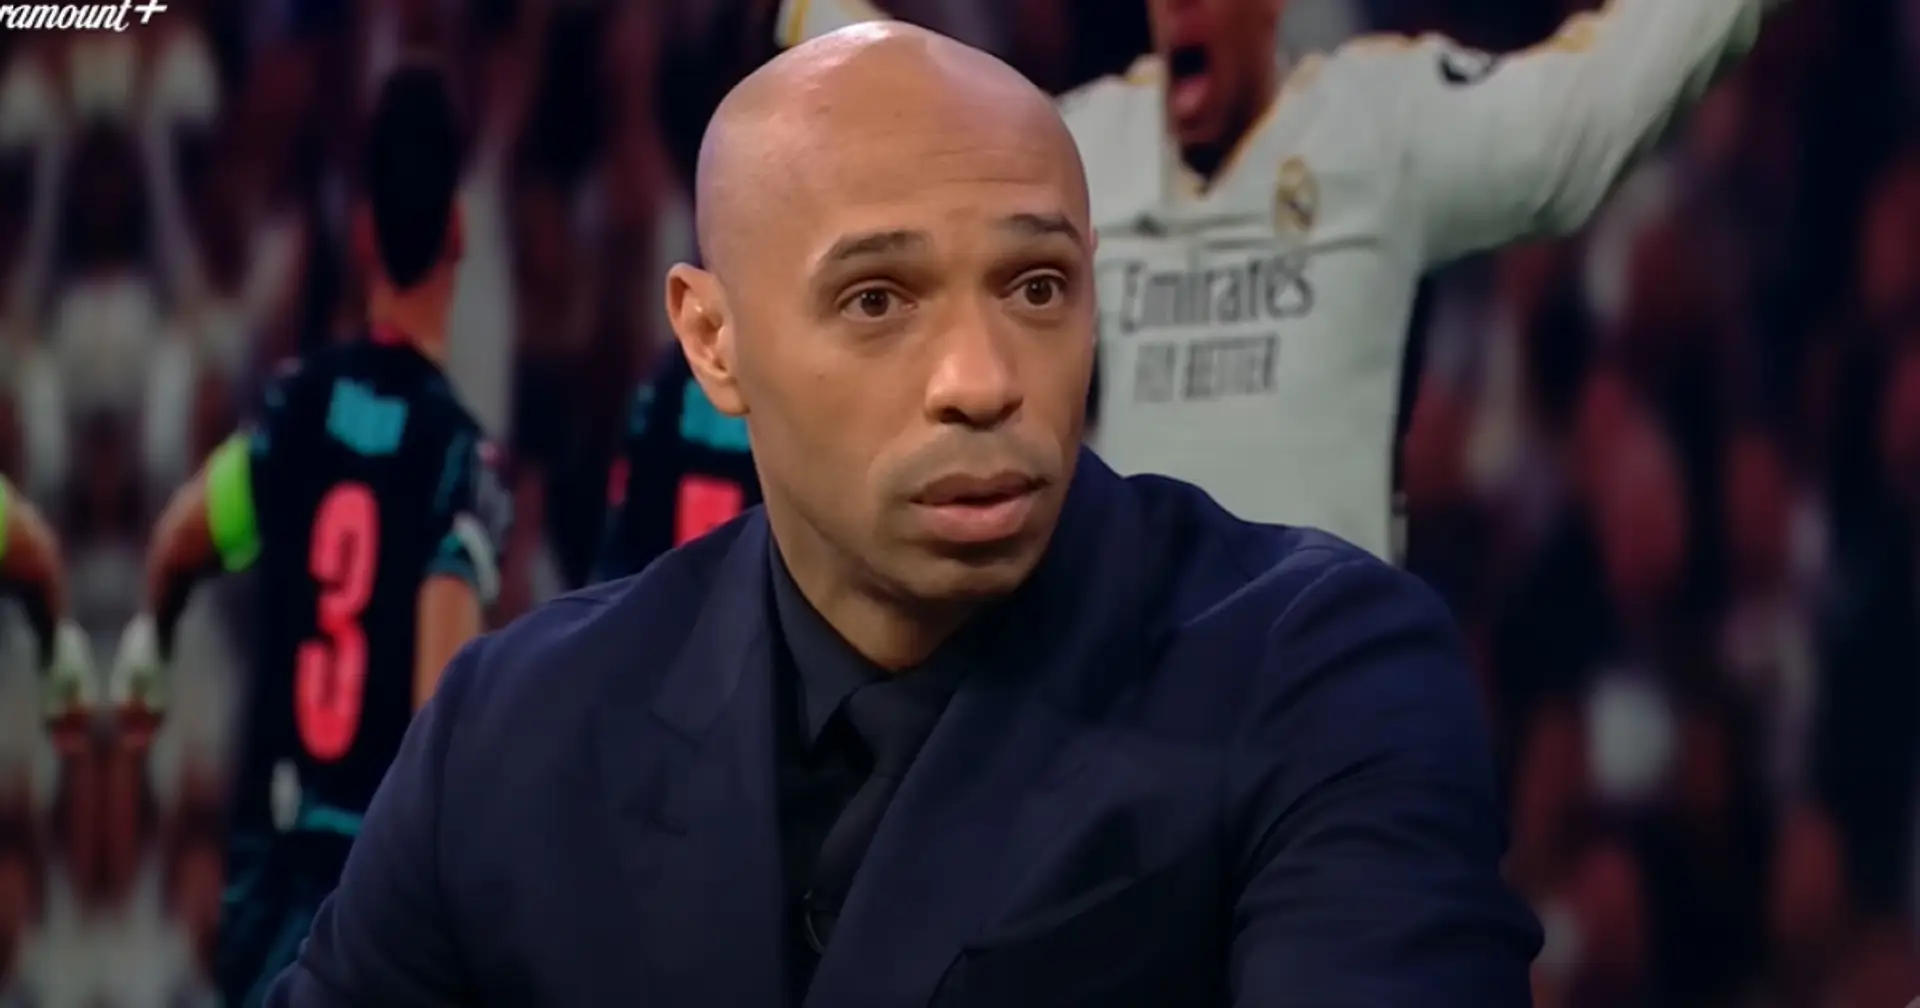 "Si mette questa squadra sulle spalle": Thierry Henry sostiene che un giocatore del Manchester City possa essere definito di livello mondiale dopo questa stagione